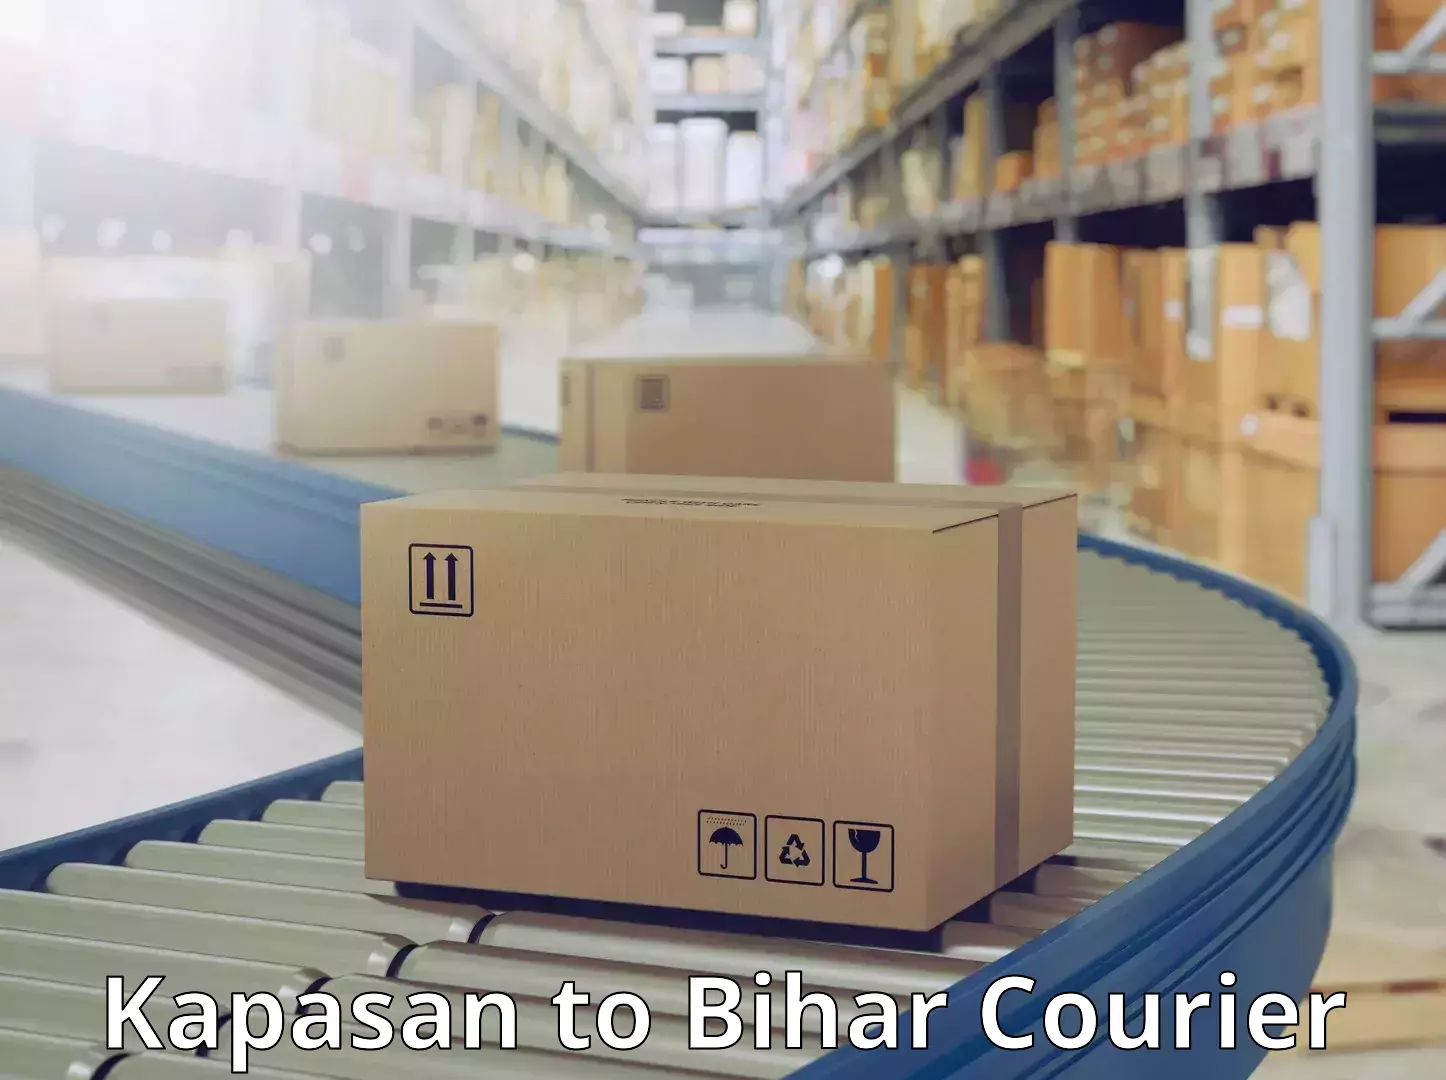 Bulk shipping discounts Kapasan to Bihar